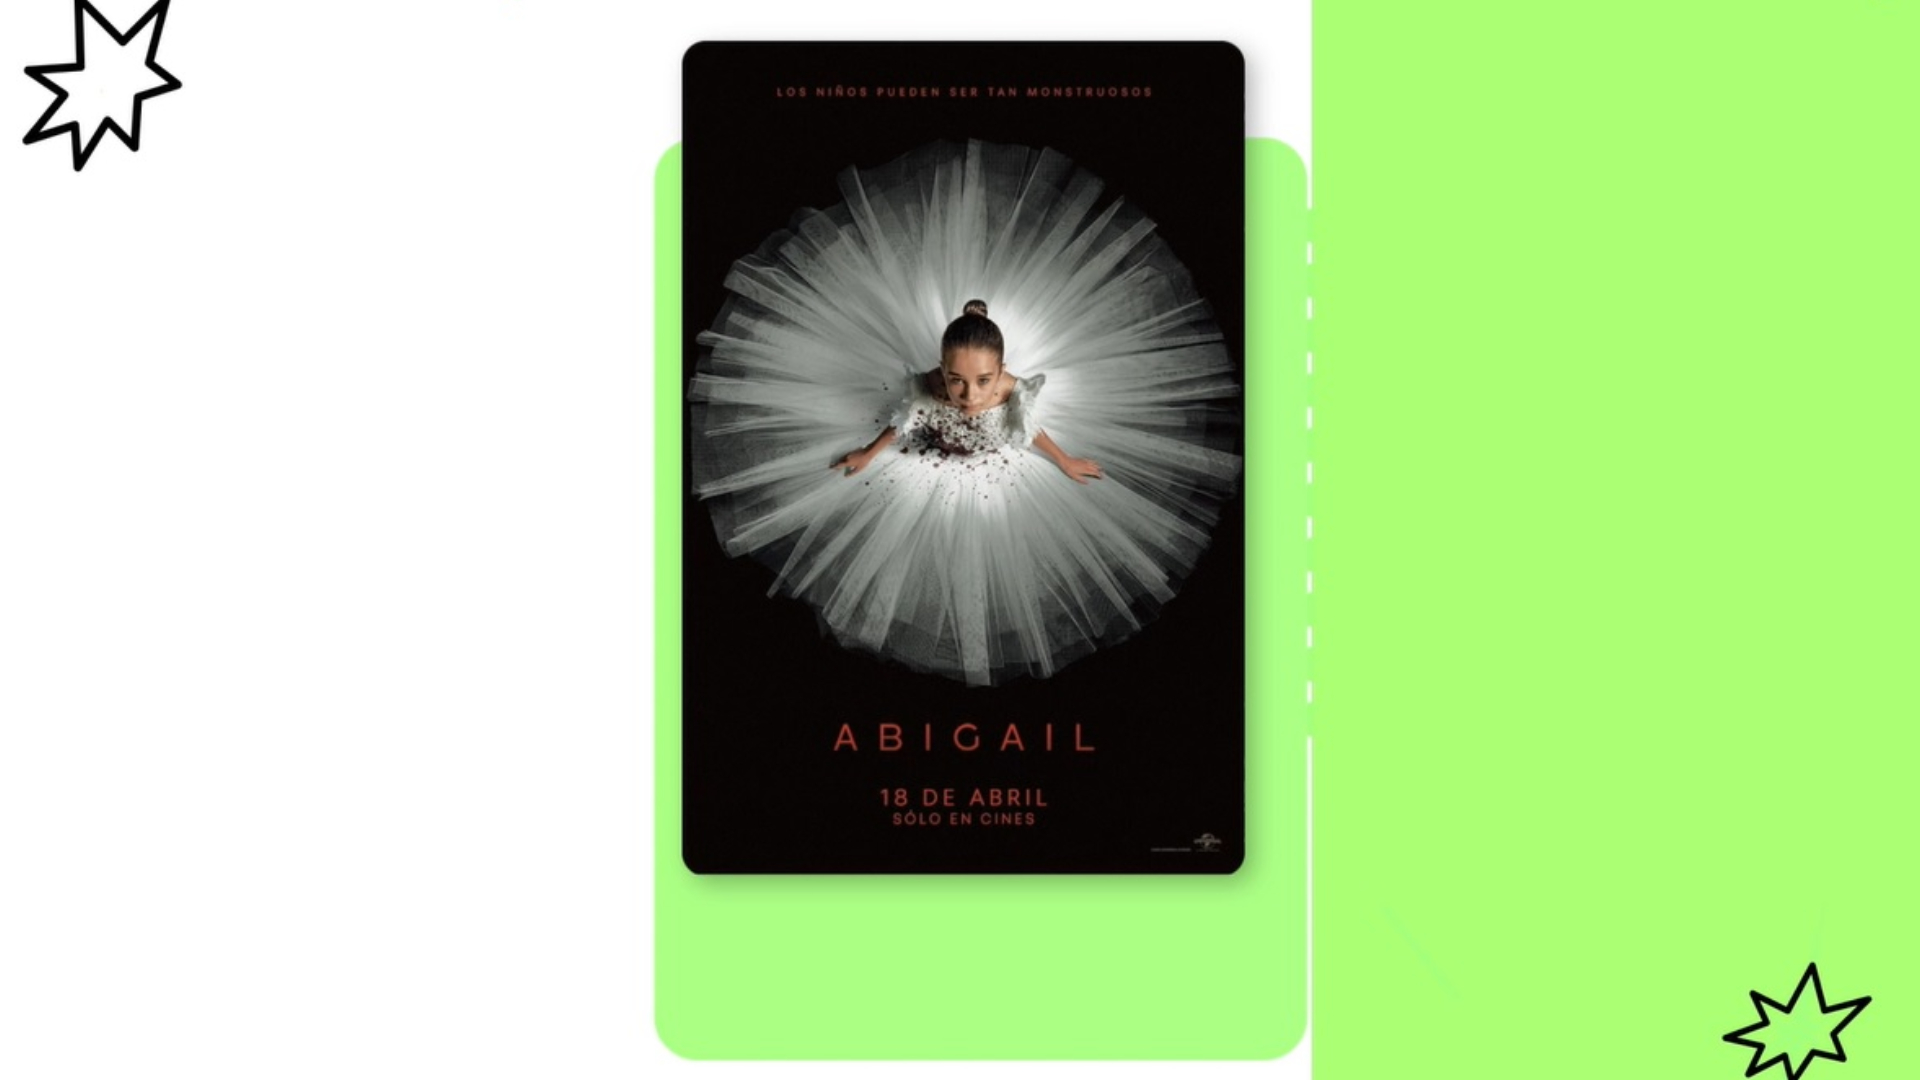 Abigail película terror estreno